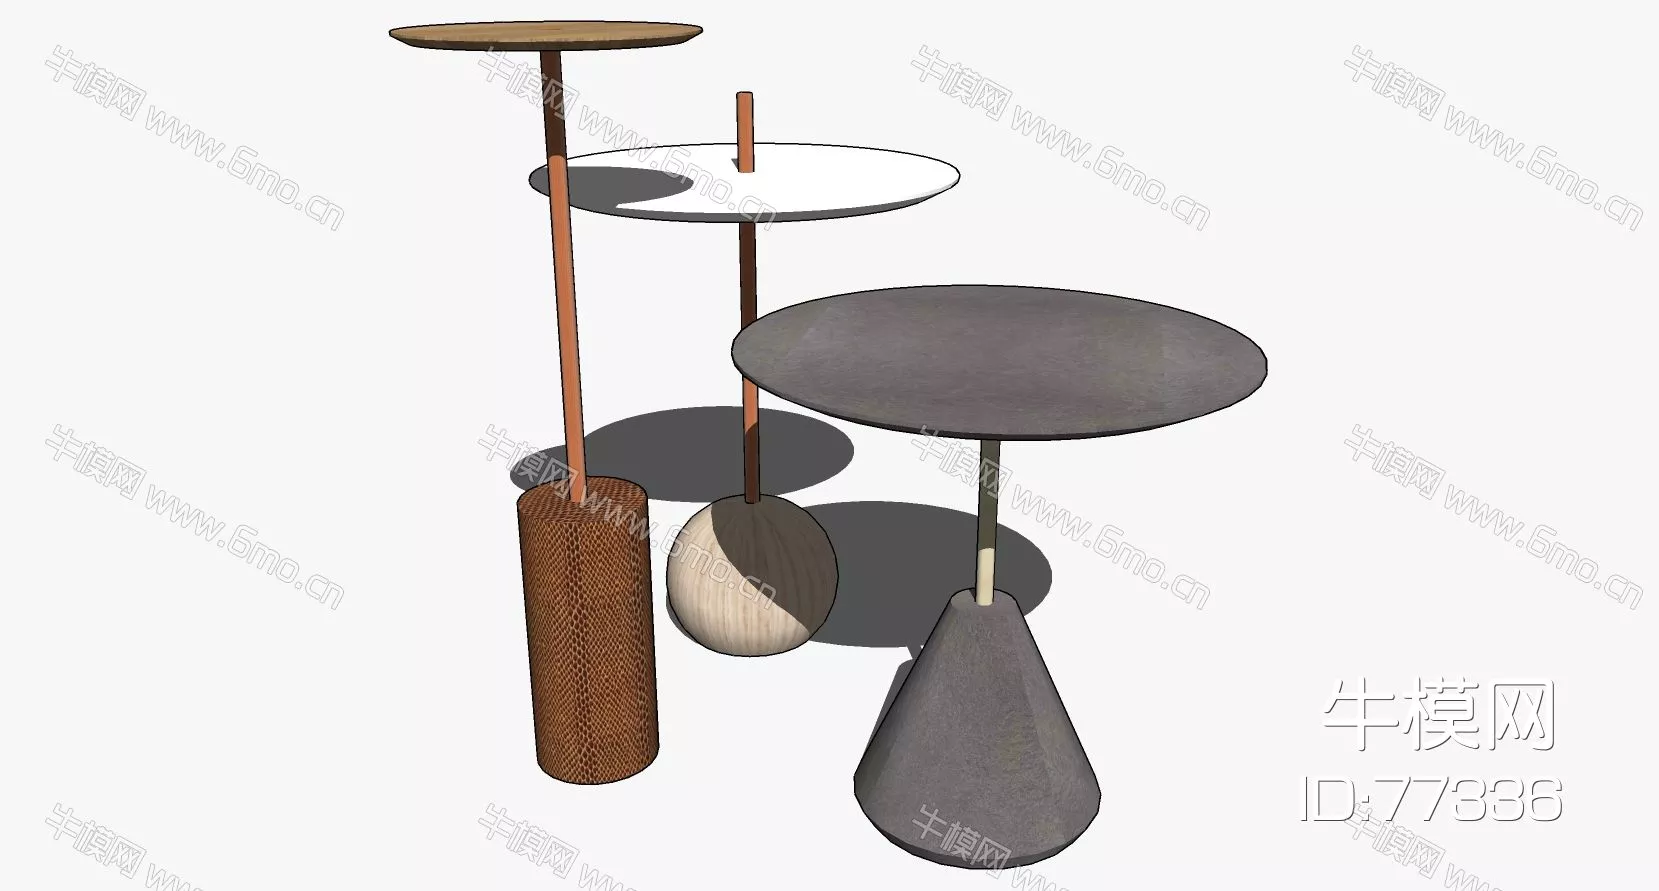 NORDIC SIDE TABLE - SKETCHUP 3D MODEL - ENSCAPE - 77336